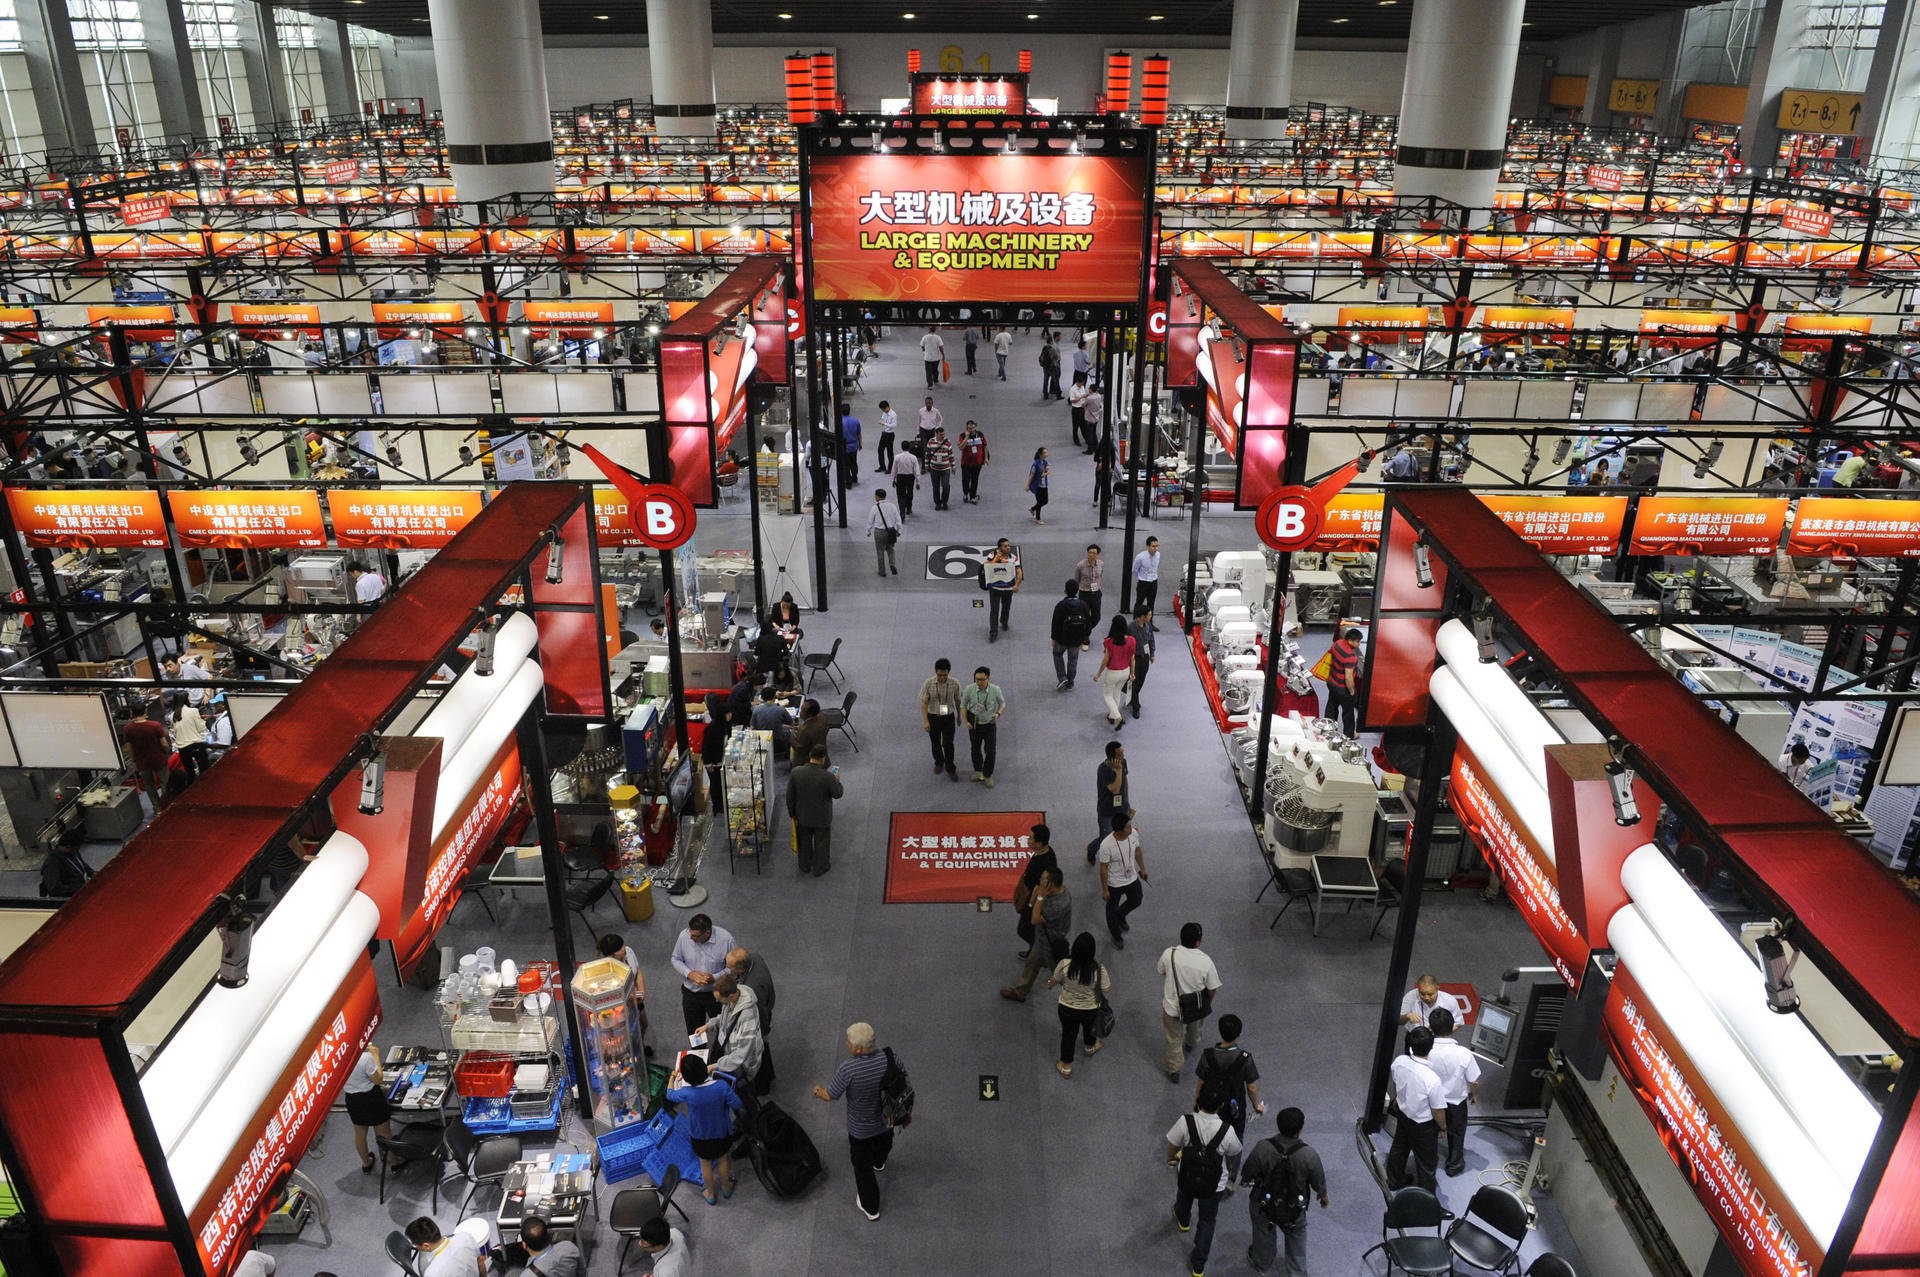 Hội chợ Canton Fair - Sàn giao dịch hàng hóa quốc tế lớn nhất Trung Quốc